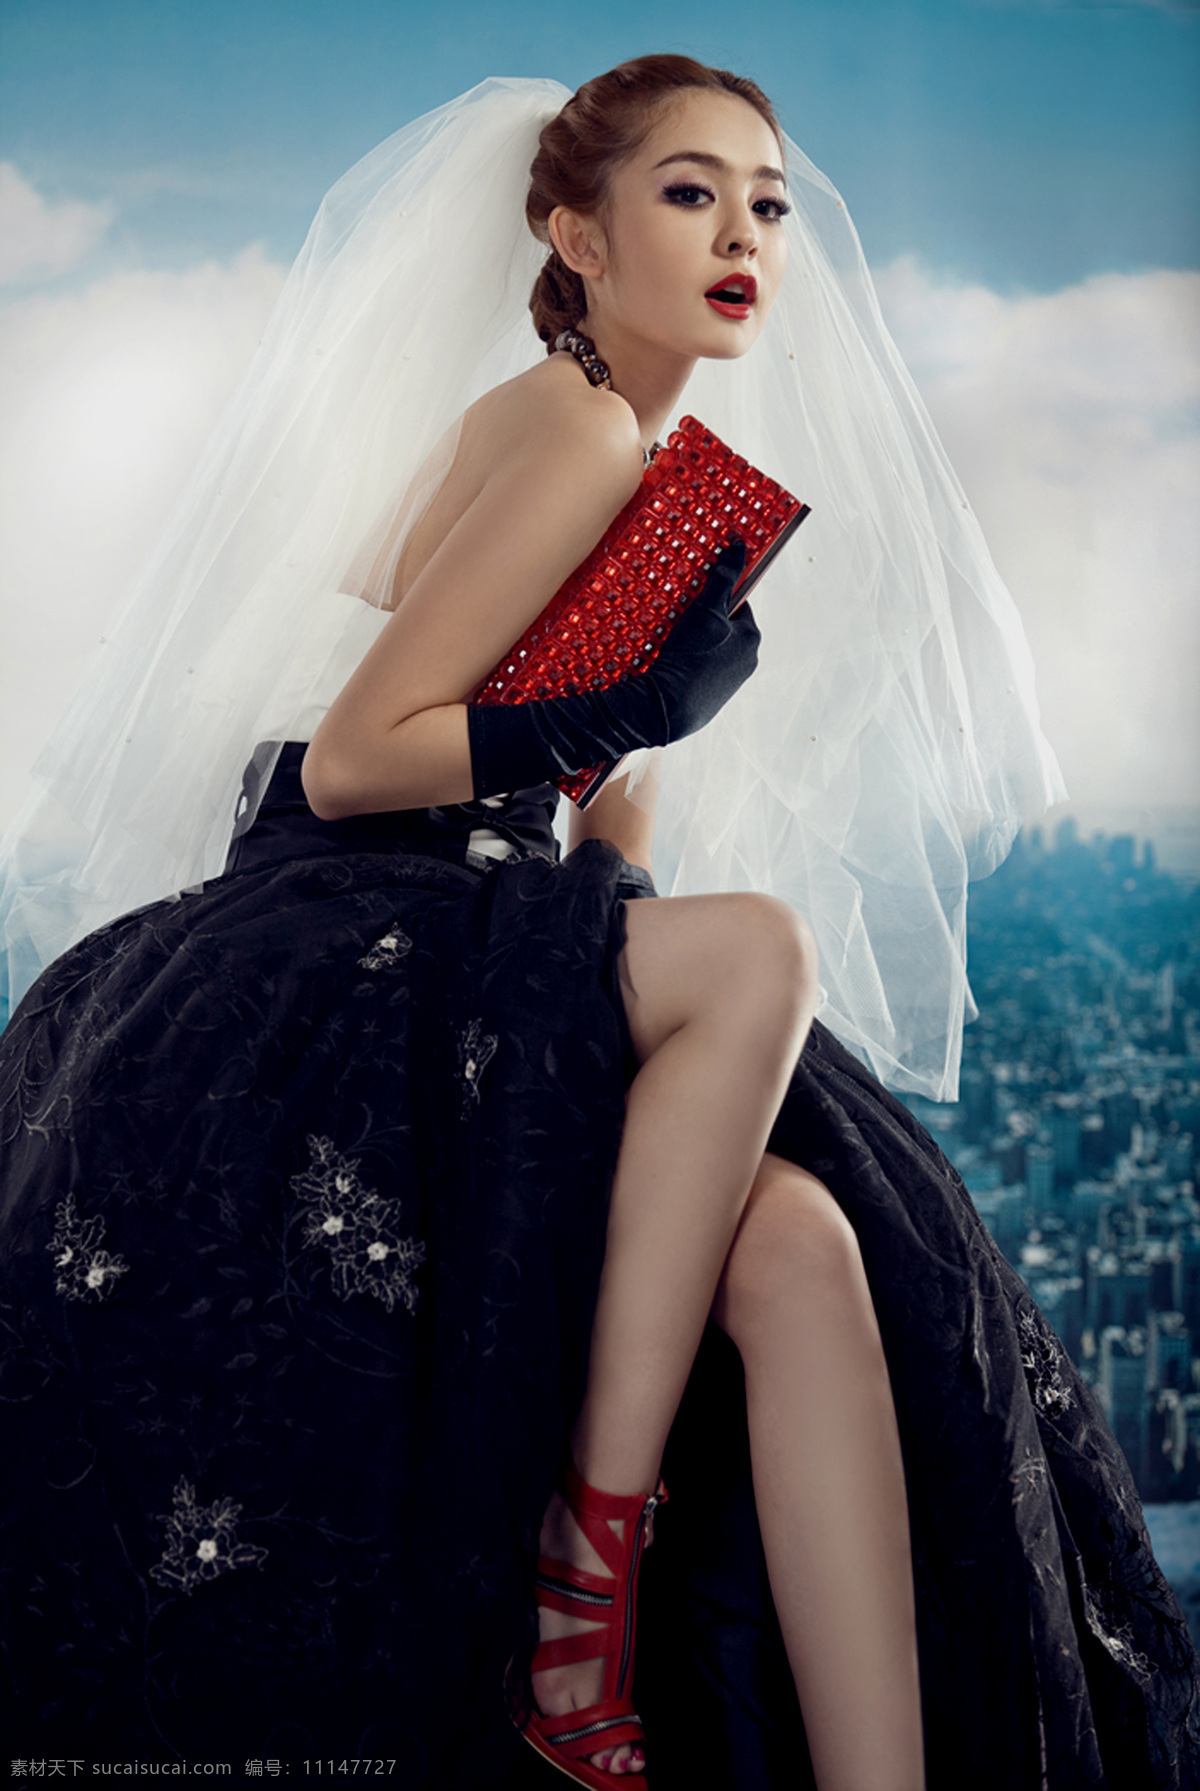 娜扎 新疆美女 中国维纳斯 名模 绝世容颜 绝色 清丽脱俗 清纯 清新 时尚 时装 婚纱 广告代言 模特 女性女人 人物图库